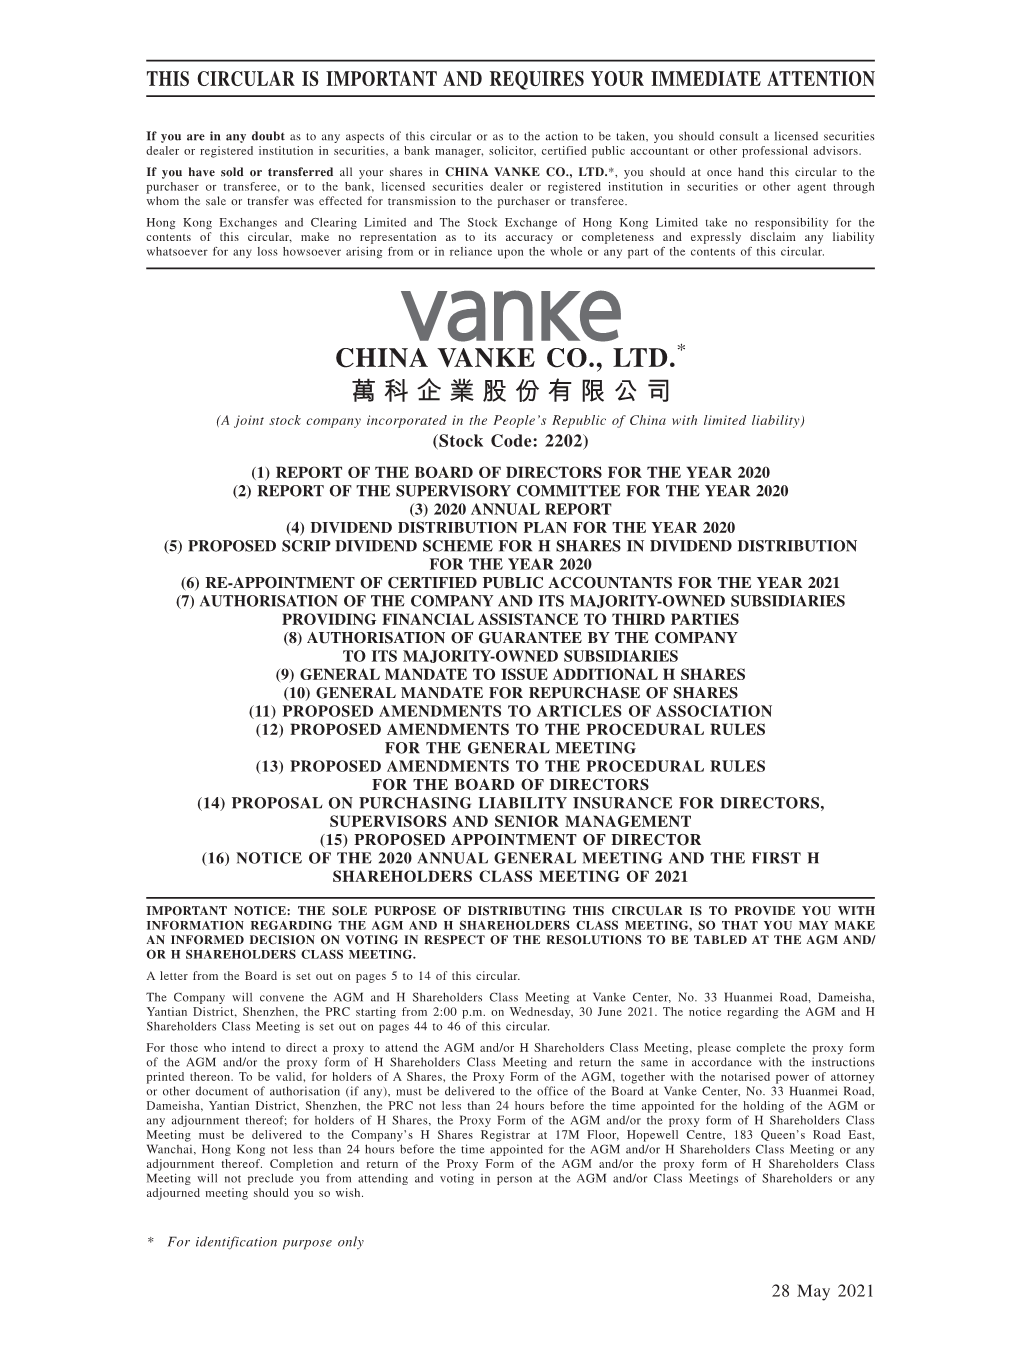 China Vanke Co., Ltd.*